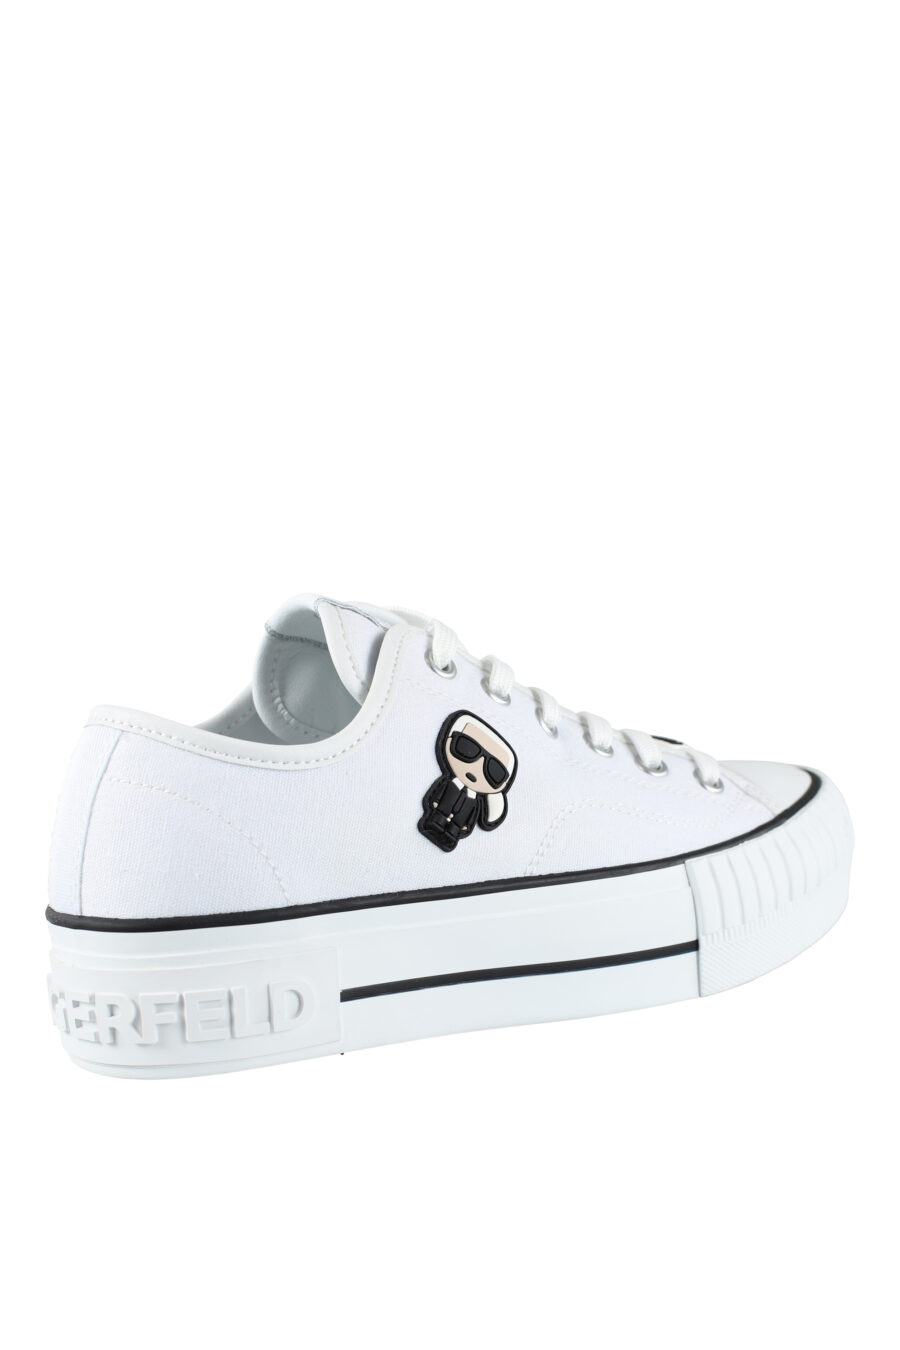 Zapatillas blancas estilo converse con logo "karl" en goma - IMG 9563